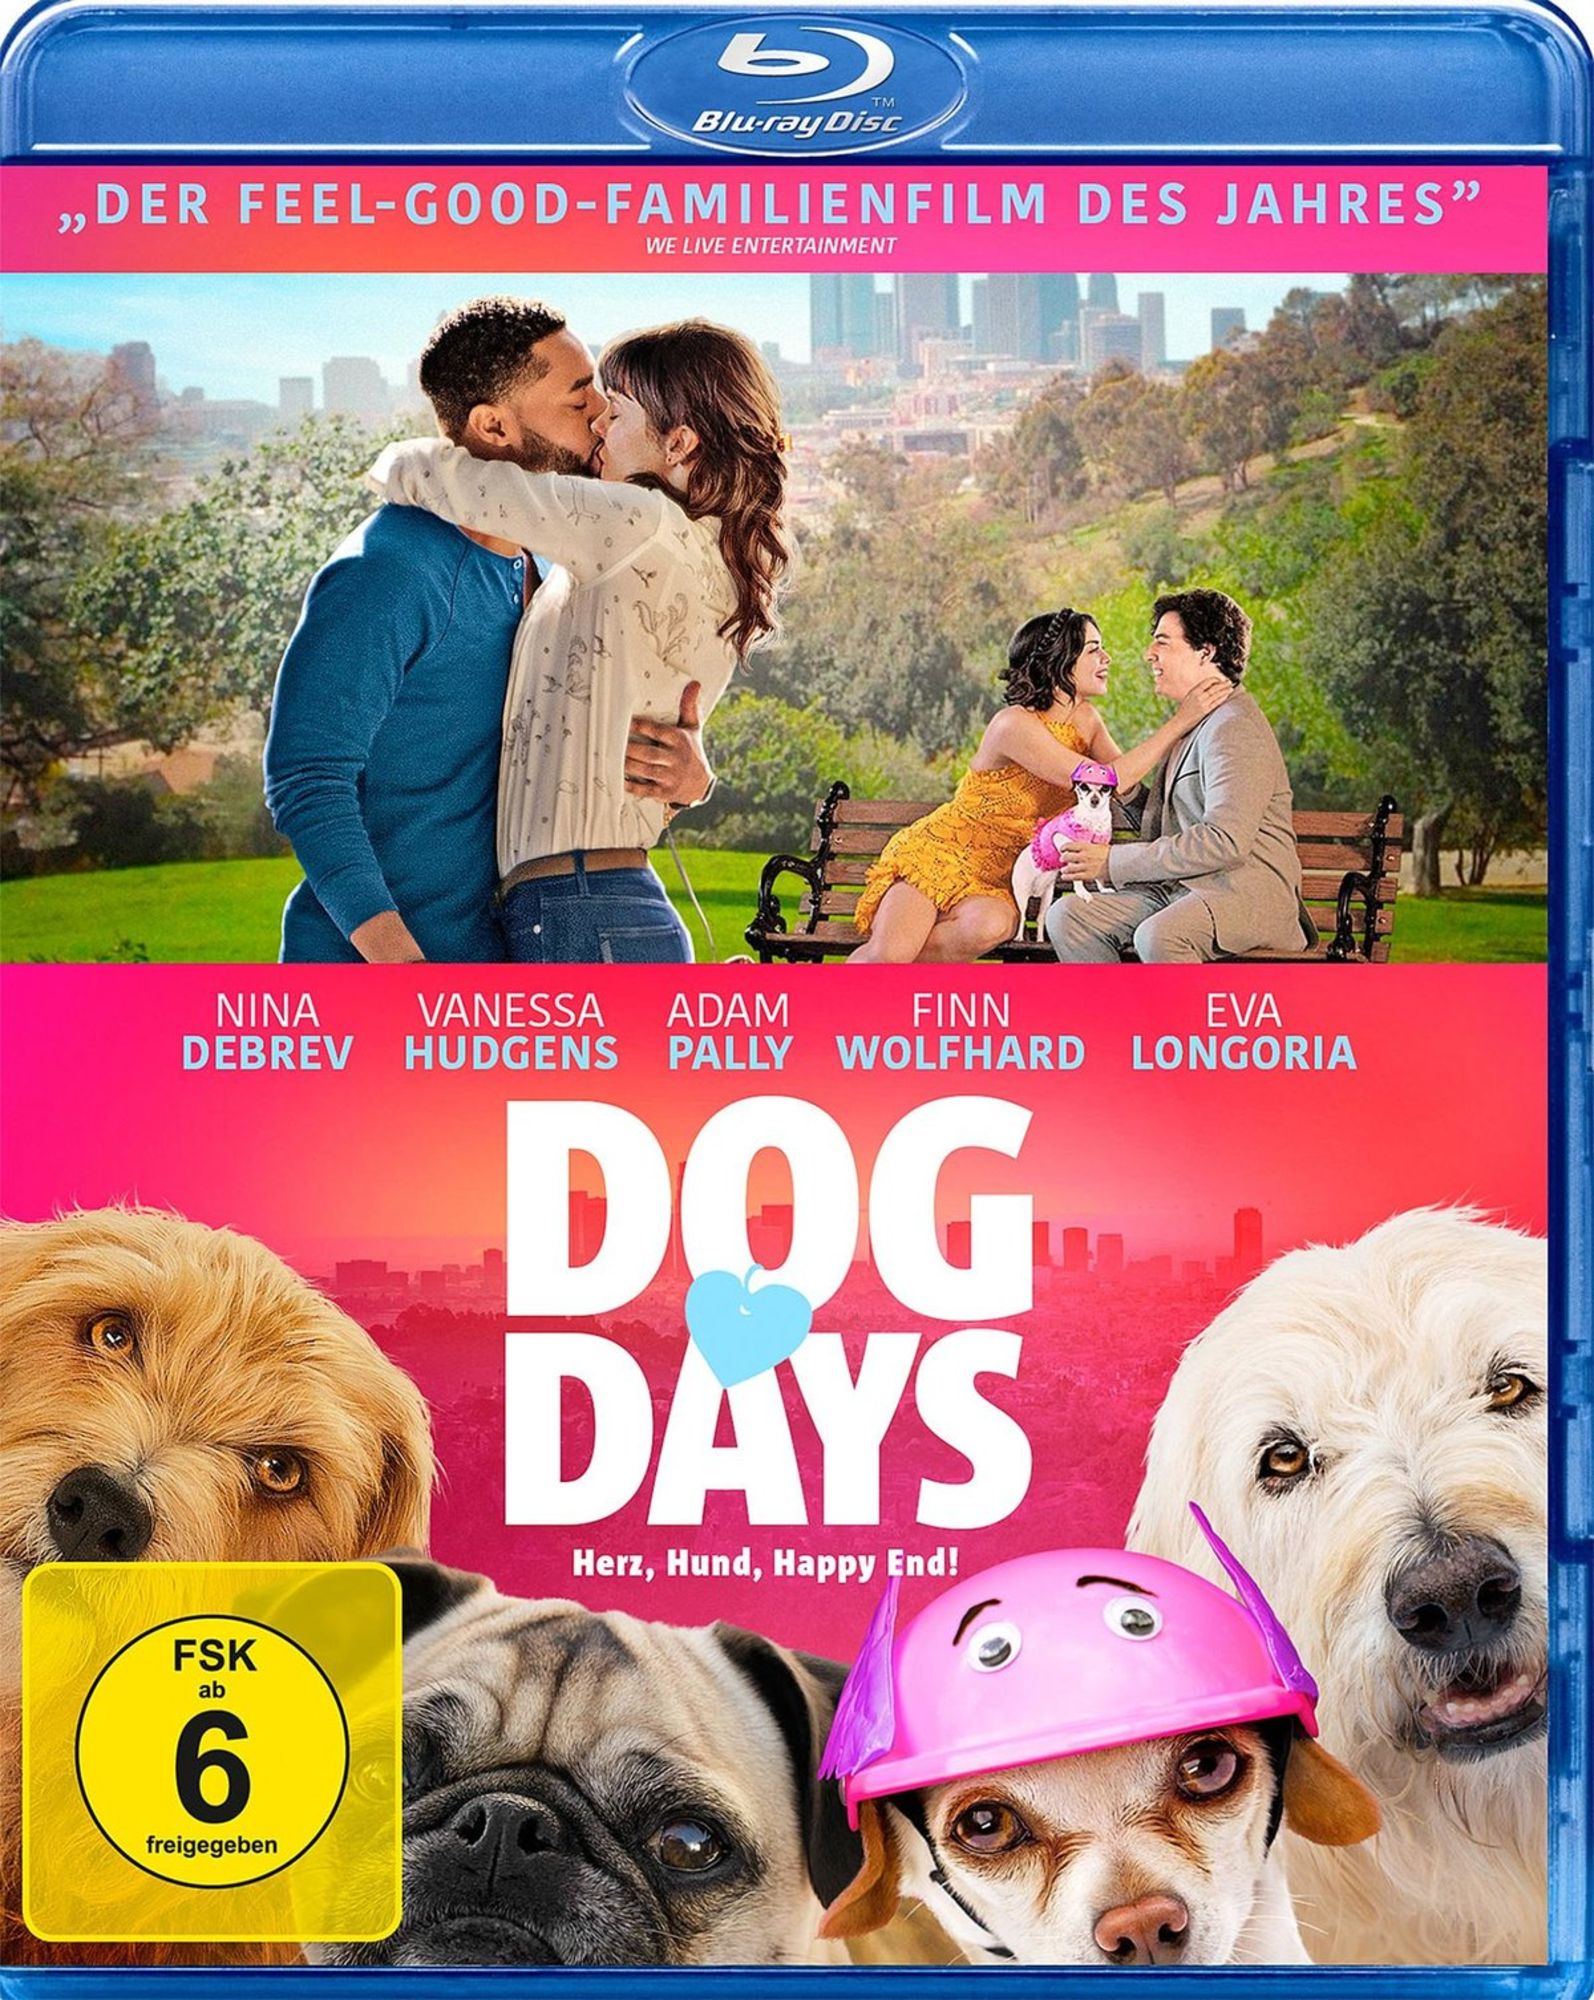 Marino'　'Blu-ray'　Happy　End!'　Herz,　von　Dog　'Ken　Days　Hund,